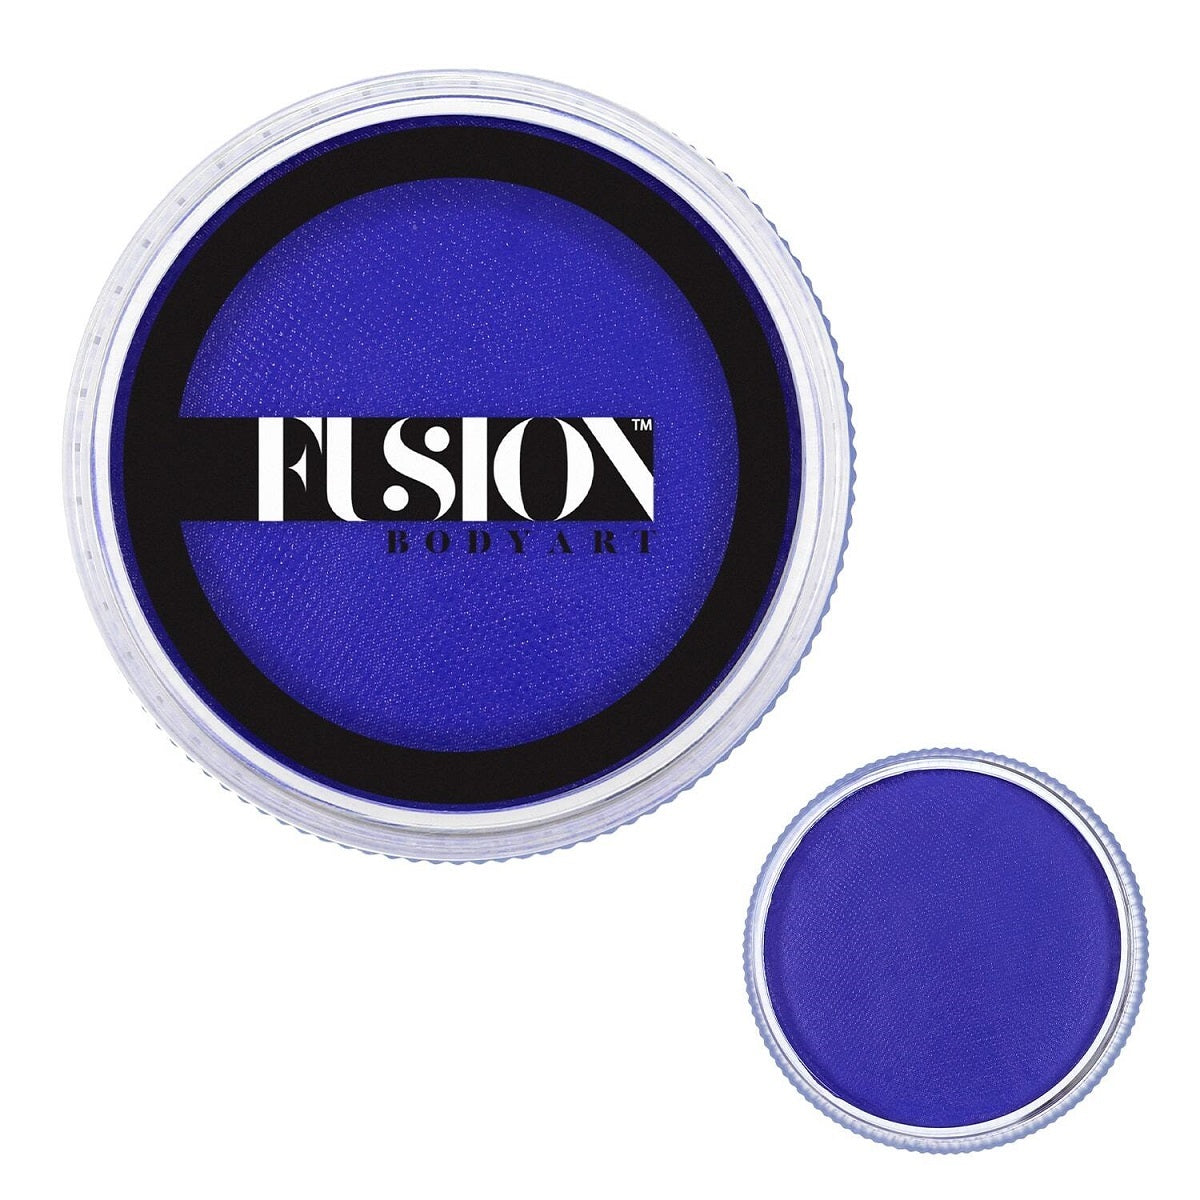 Fusion Body Art Face Paints – Prime Fresh Blue | 32g